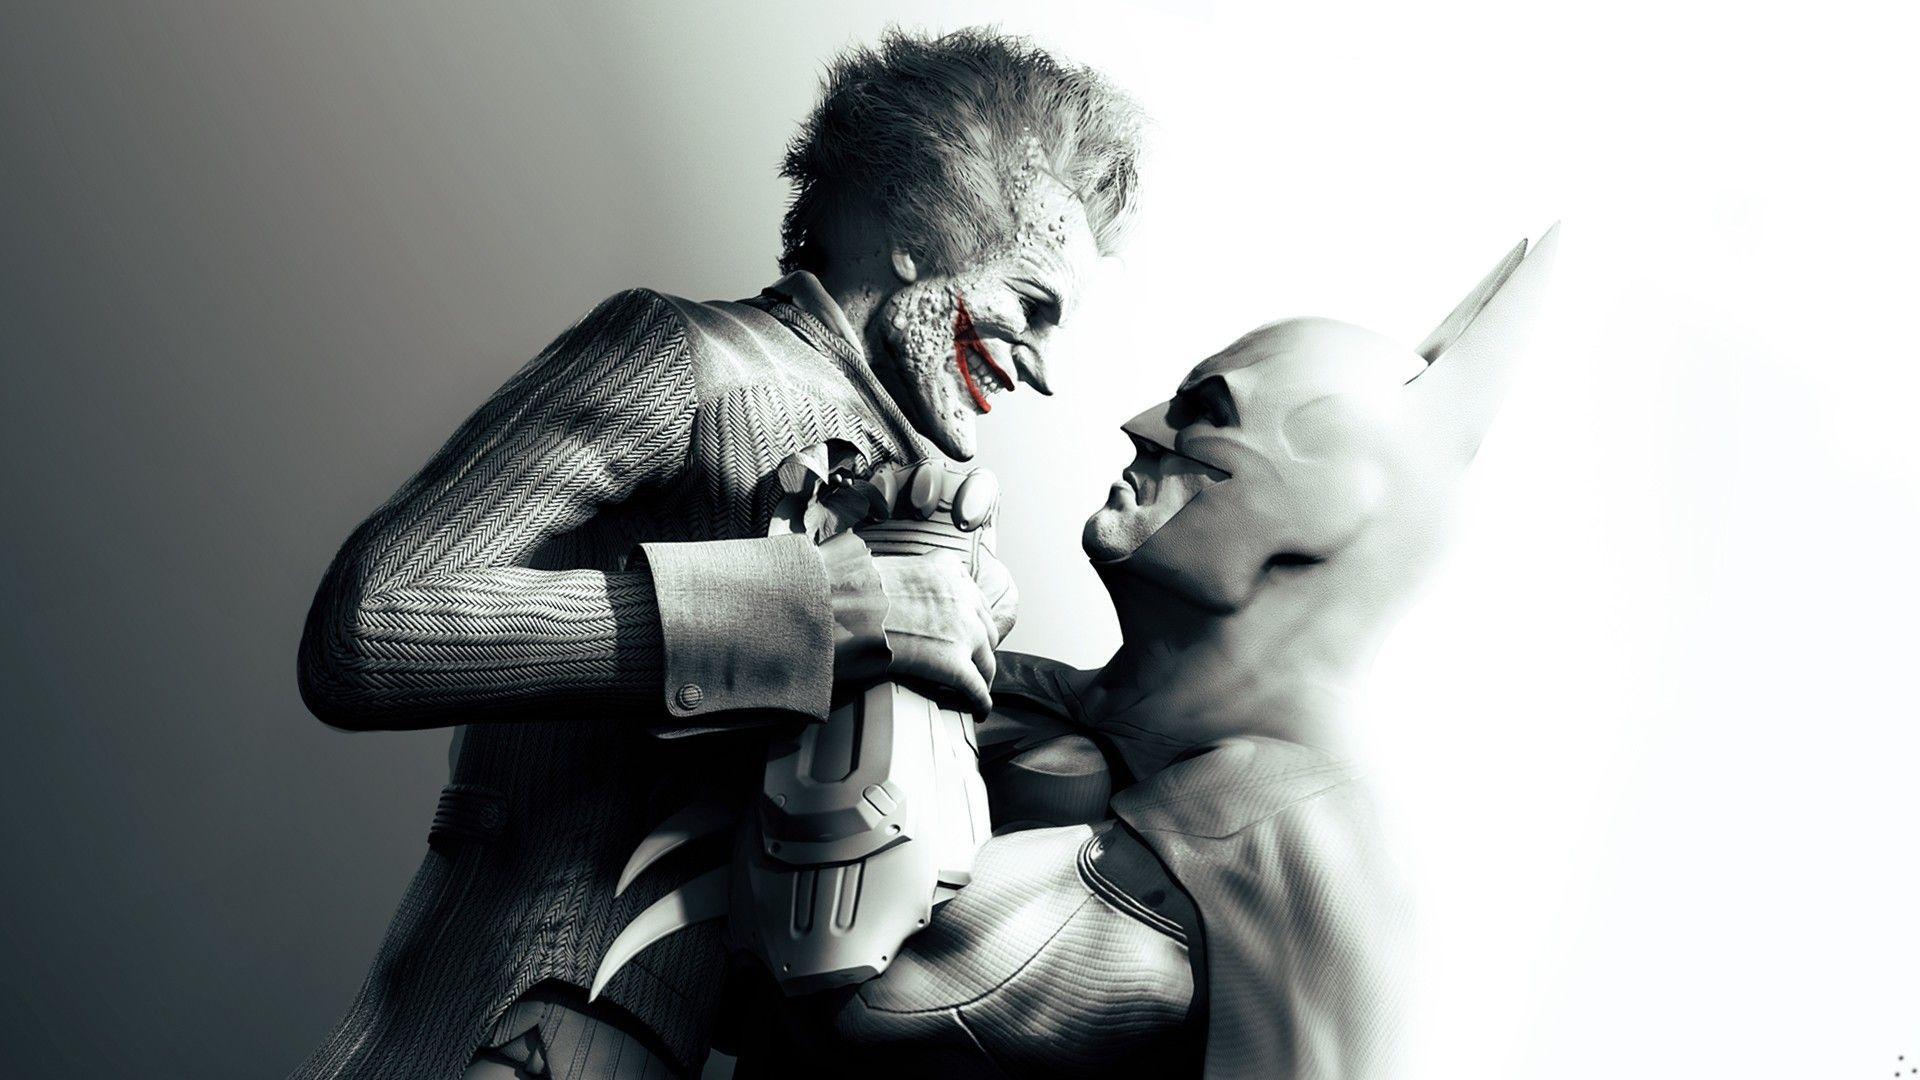 Animals For > Batman Joker Wallpaper Widescreen